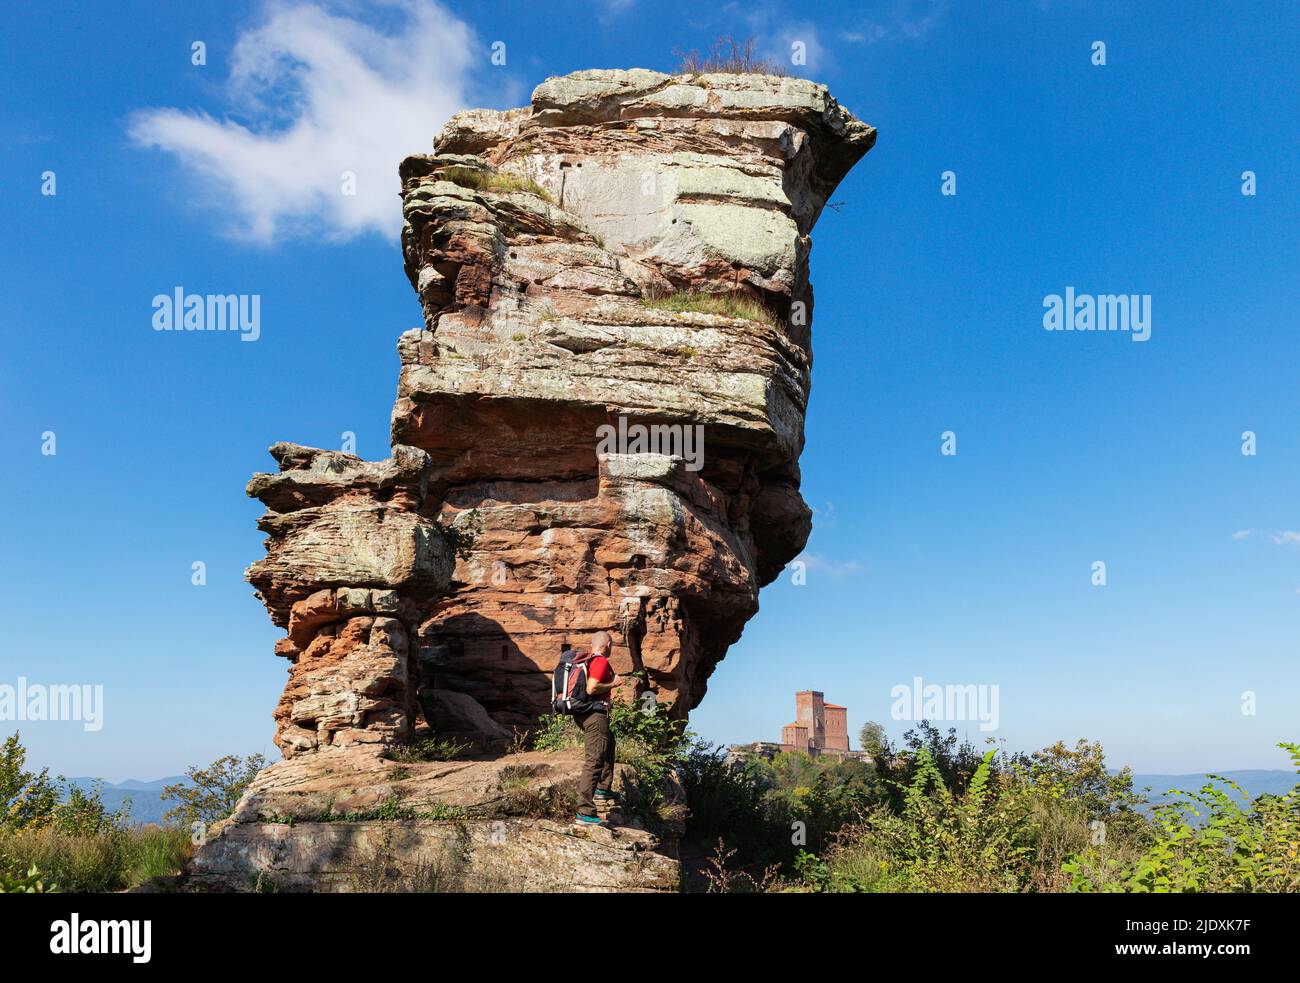 Germania, Renania-Palatinato, escursionista senior in piedi di fronte alla formazione di rocce di arenaria nella foresta di Palatinato con il castello di Trifels in background distante Foto Stock